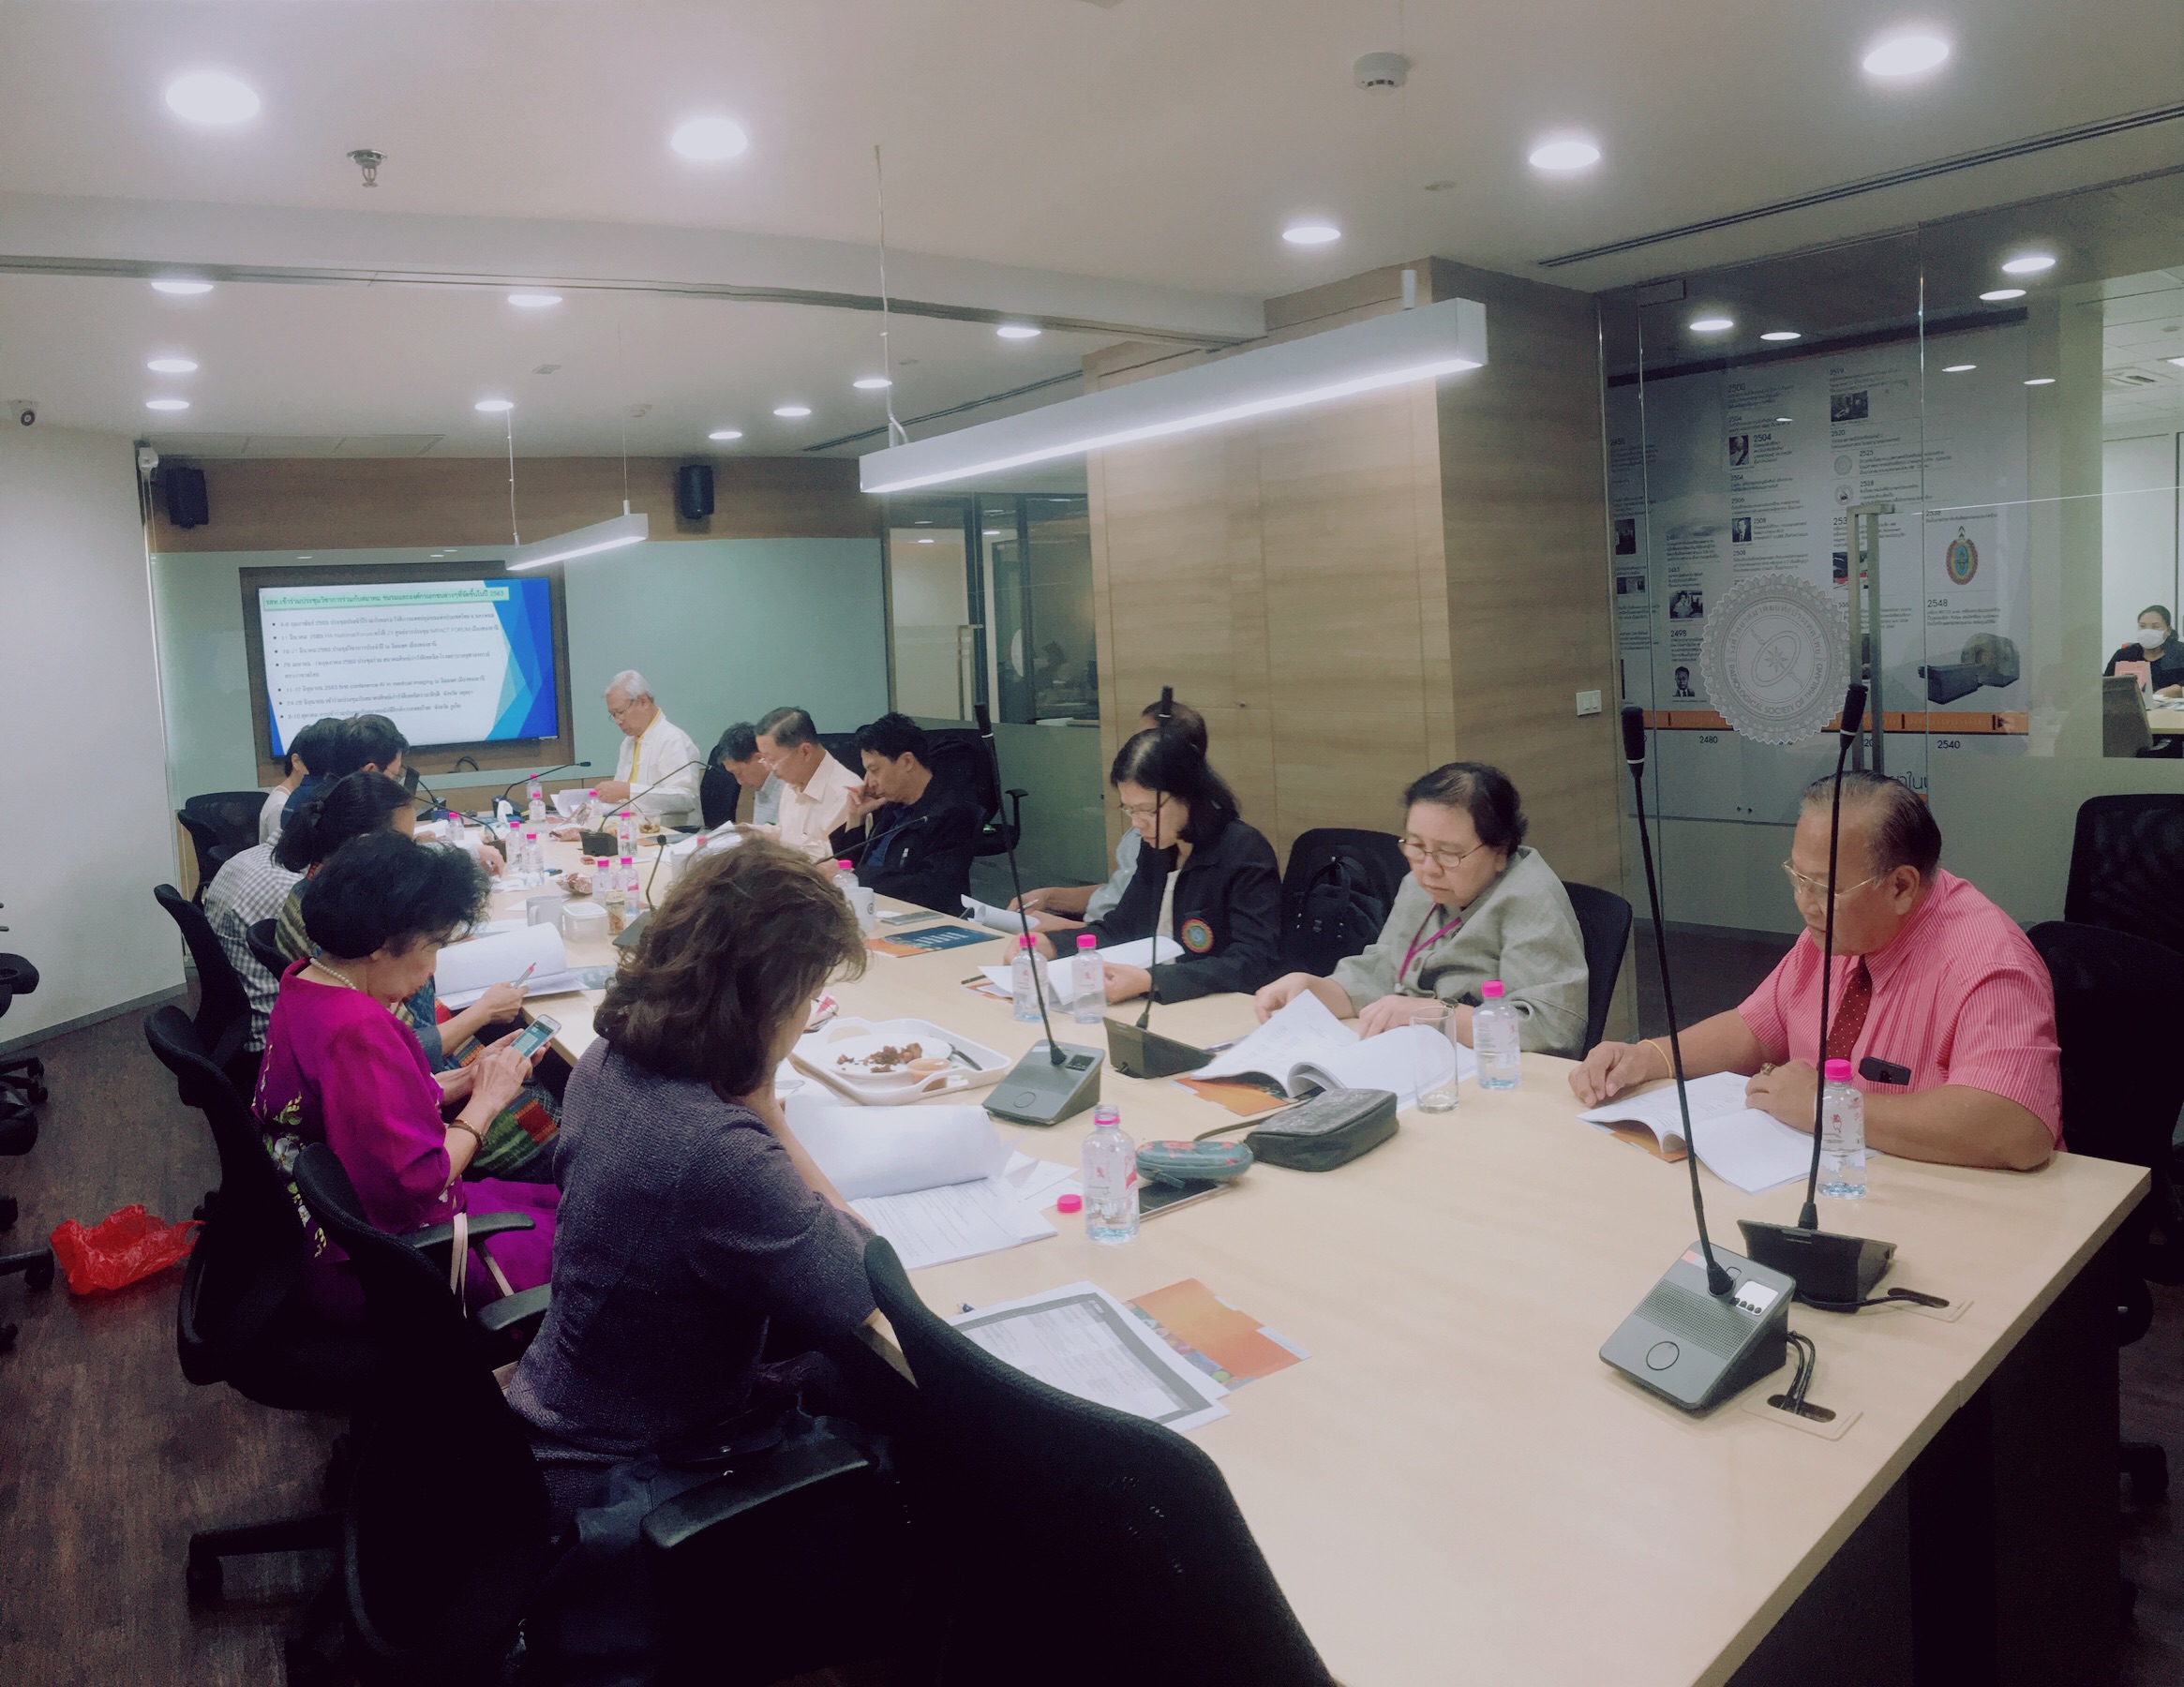 การประชุมคณะกรรมการอำนวยการรังสีวิทยาสมาคมแห่งประเทศไทย ร่วมกับคณะกรรมการกลาง ในวันที่ 20 กุมภาพันธ์ 2563 20